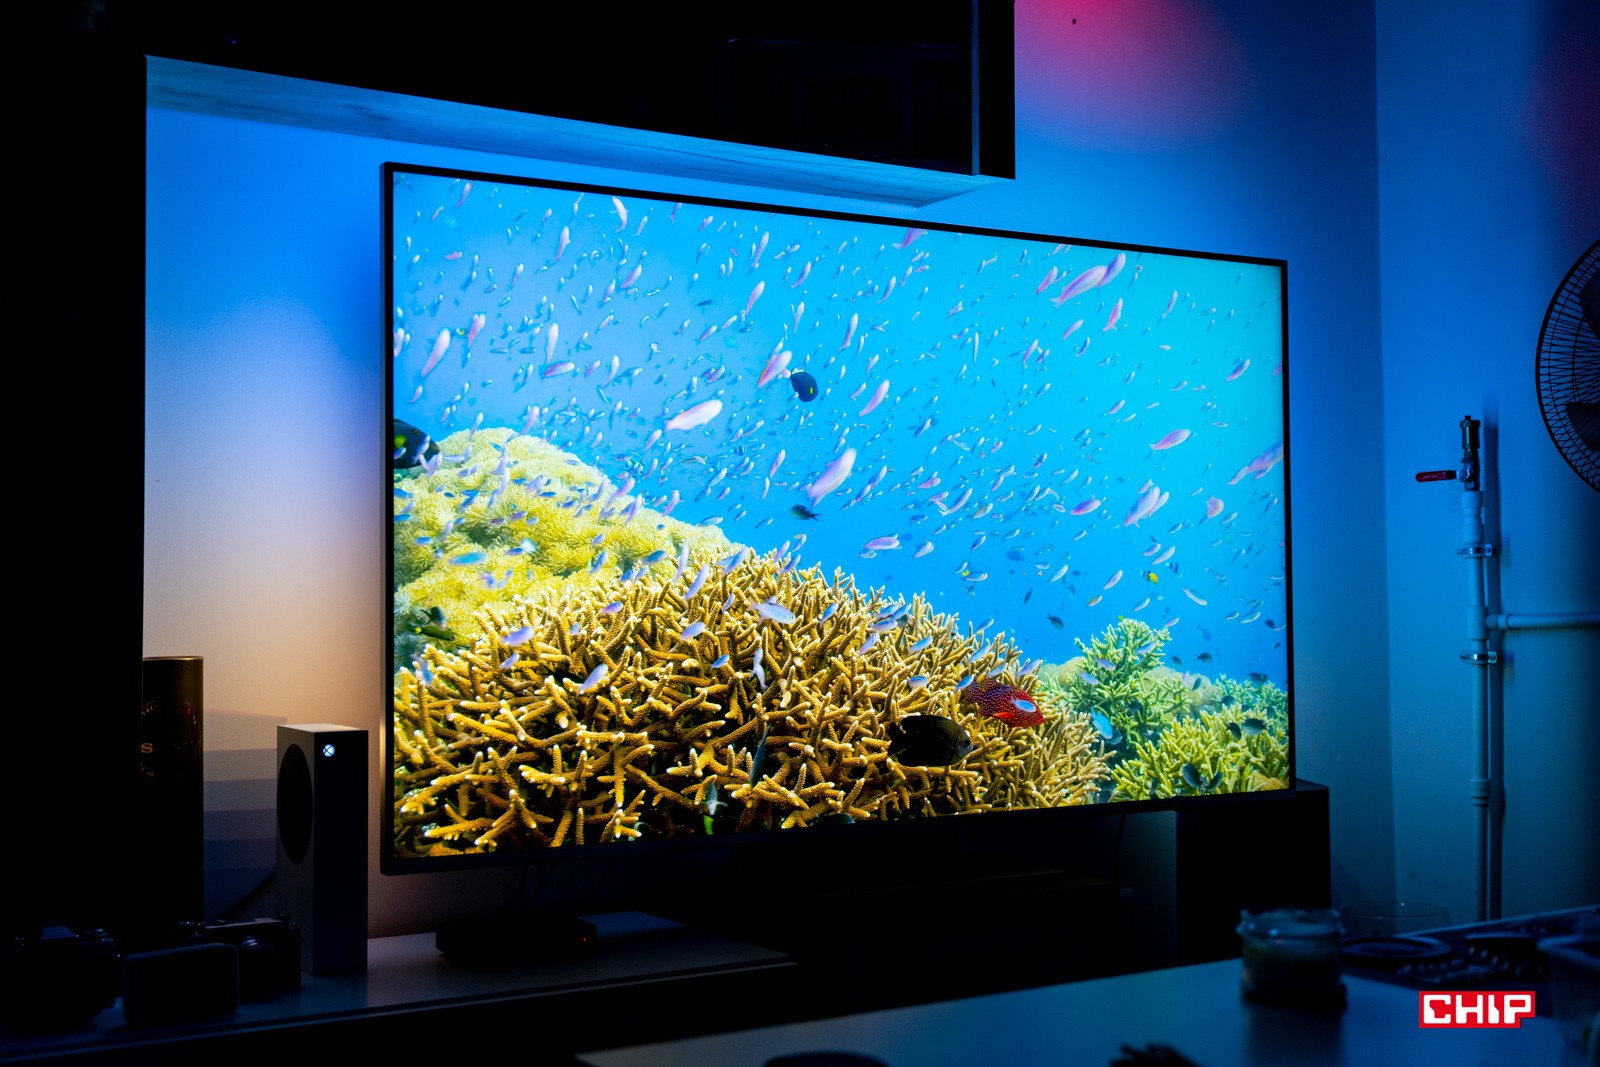 Kupujemy duży telewizor. Jaki 75-calowy lub większy telewizor wybrać?